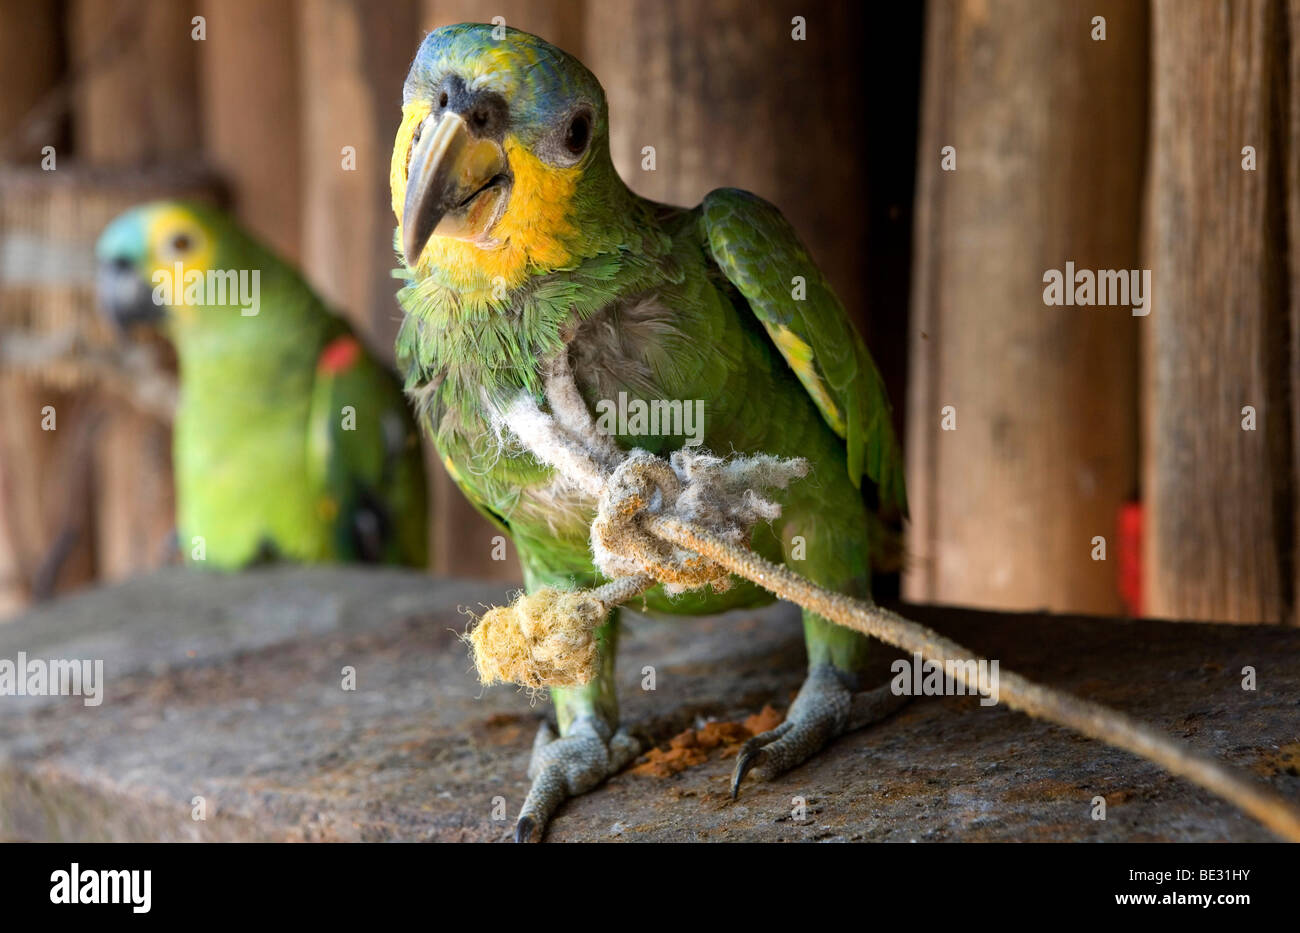 Les perroquets sont en faveur d'animaux domestiques pour les Indiens Xingu dans l'Amazone, Brésil Banque D'Images